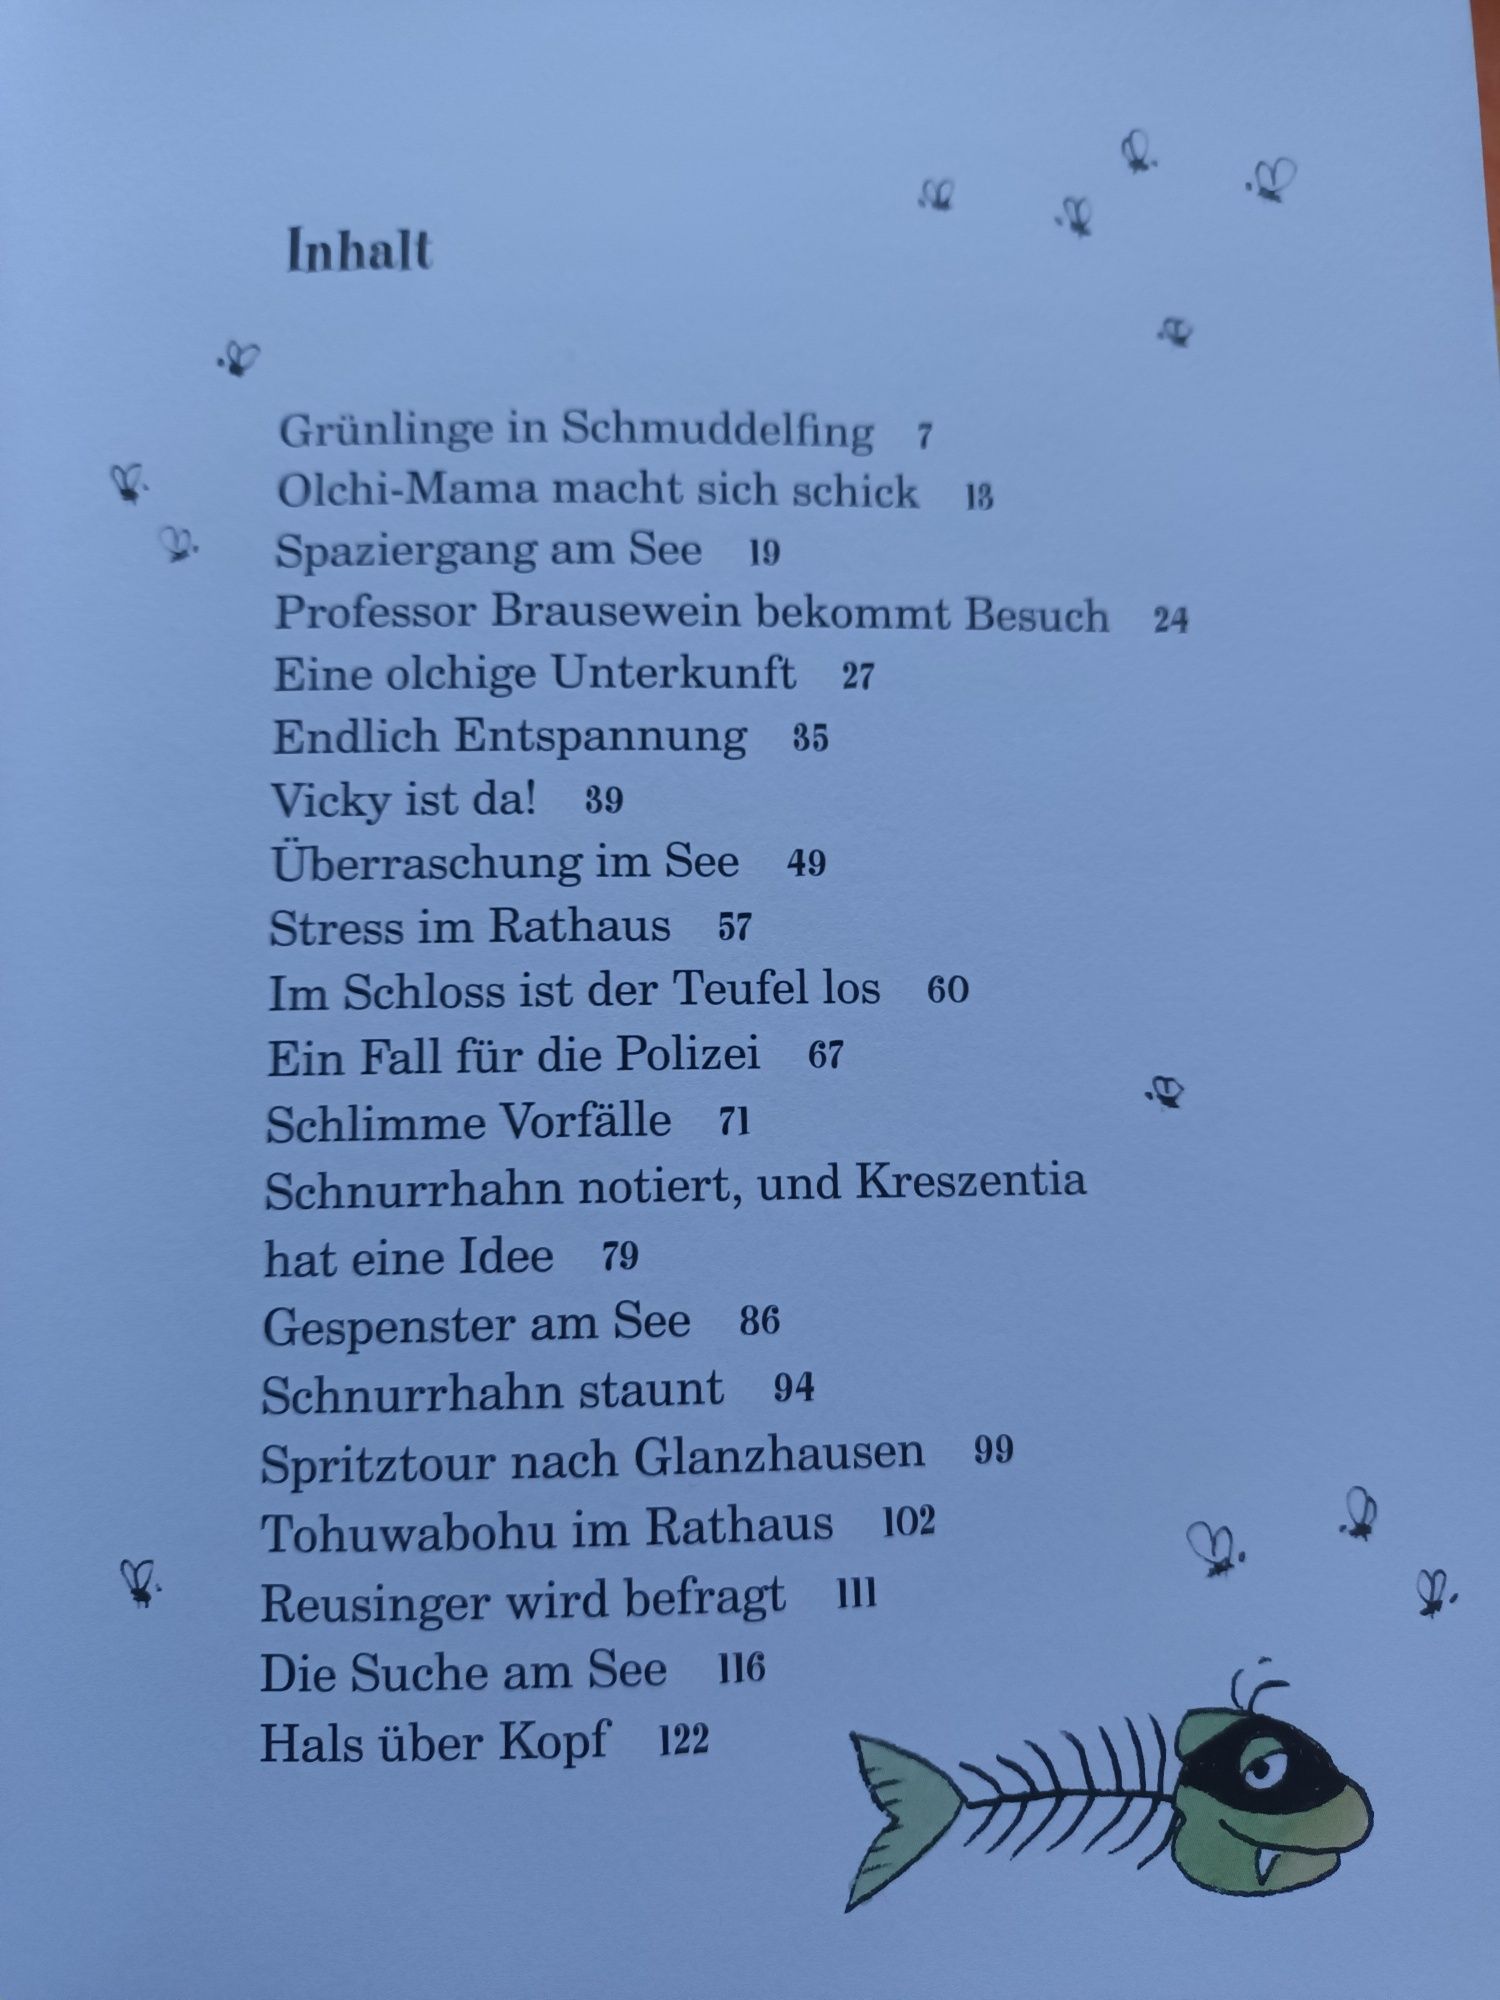 Die Olchis  Jagd auf das Phantom - Olchy ( książka w j.niemieckim)